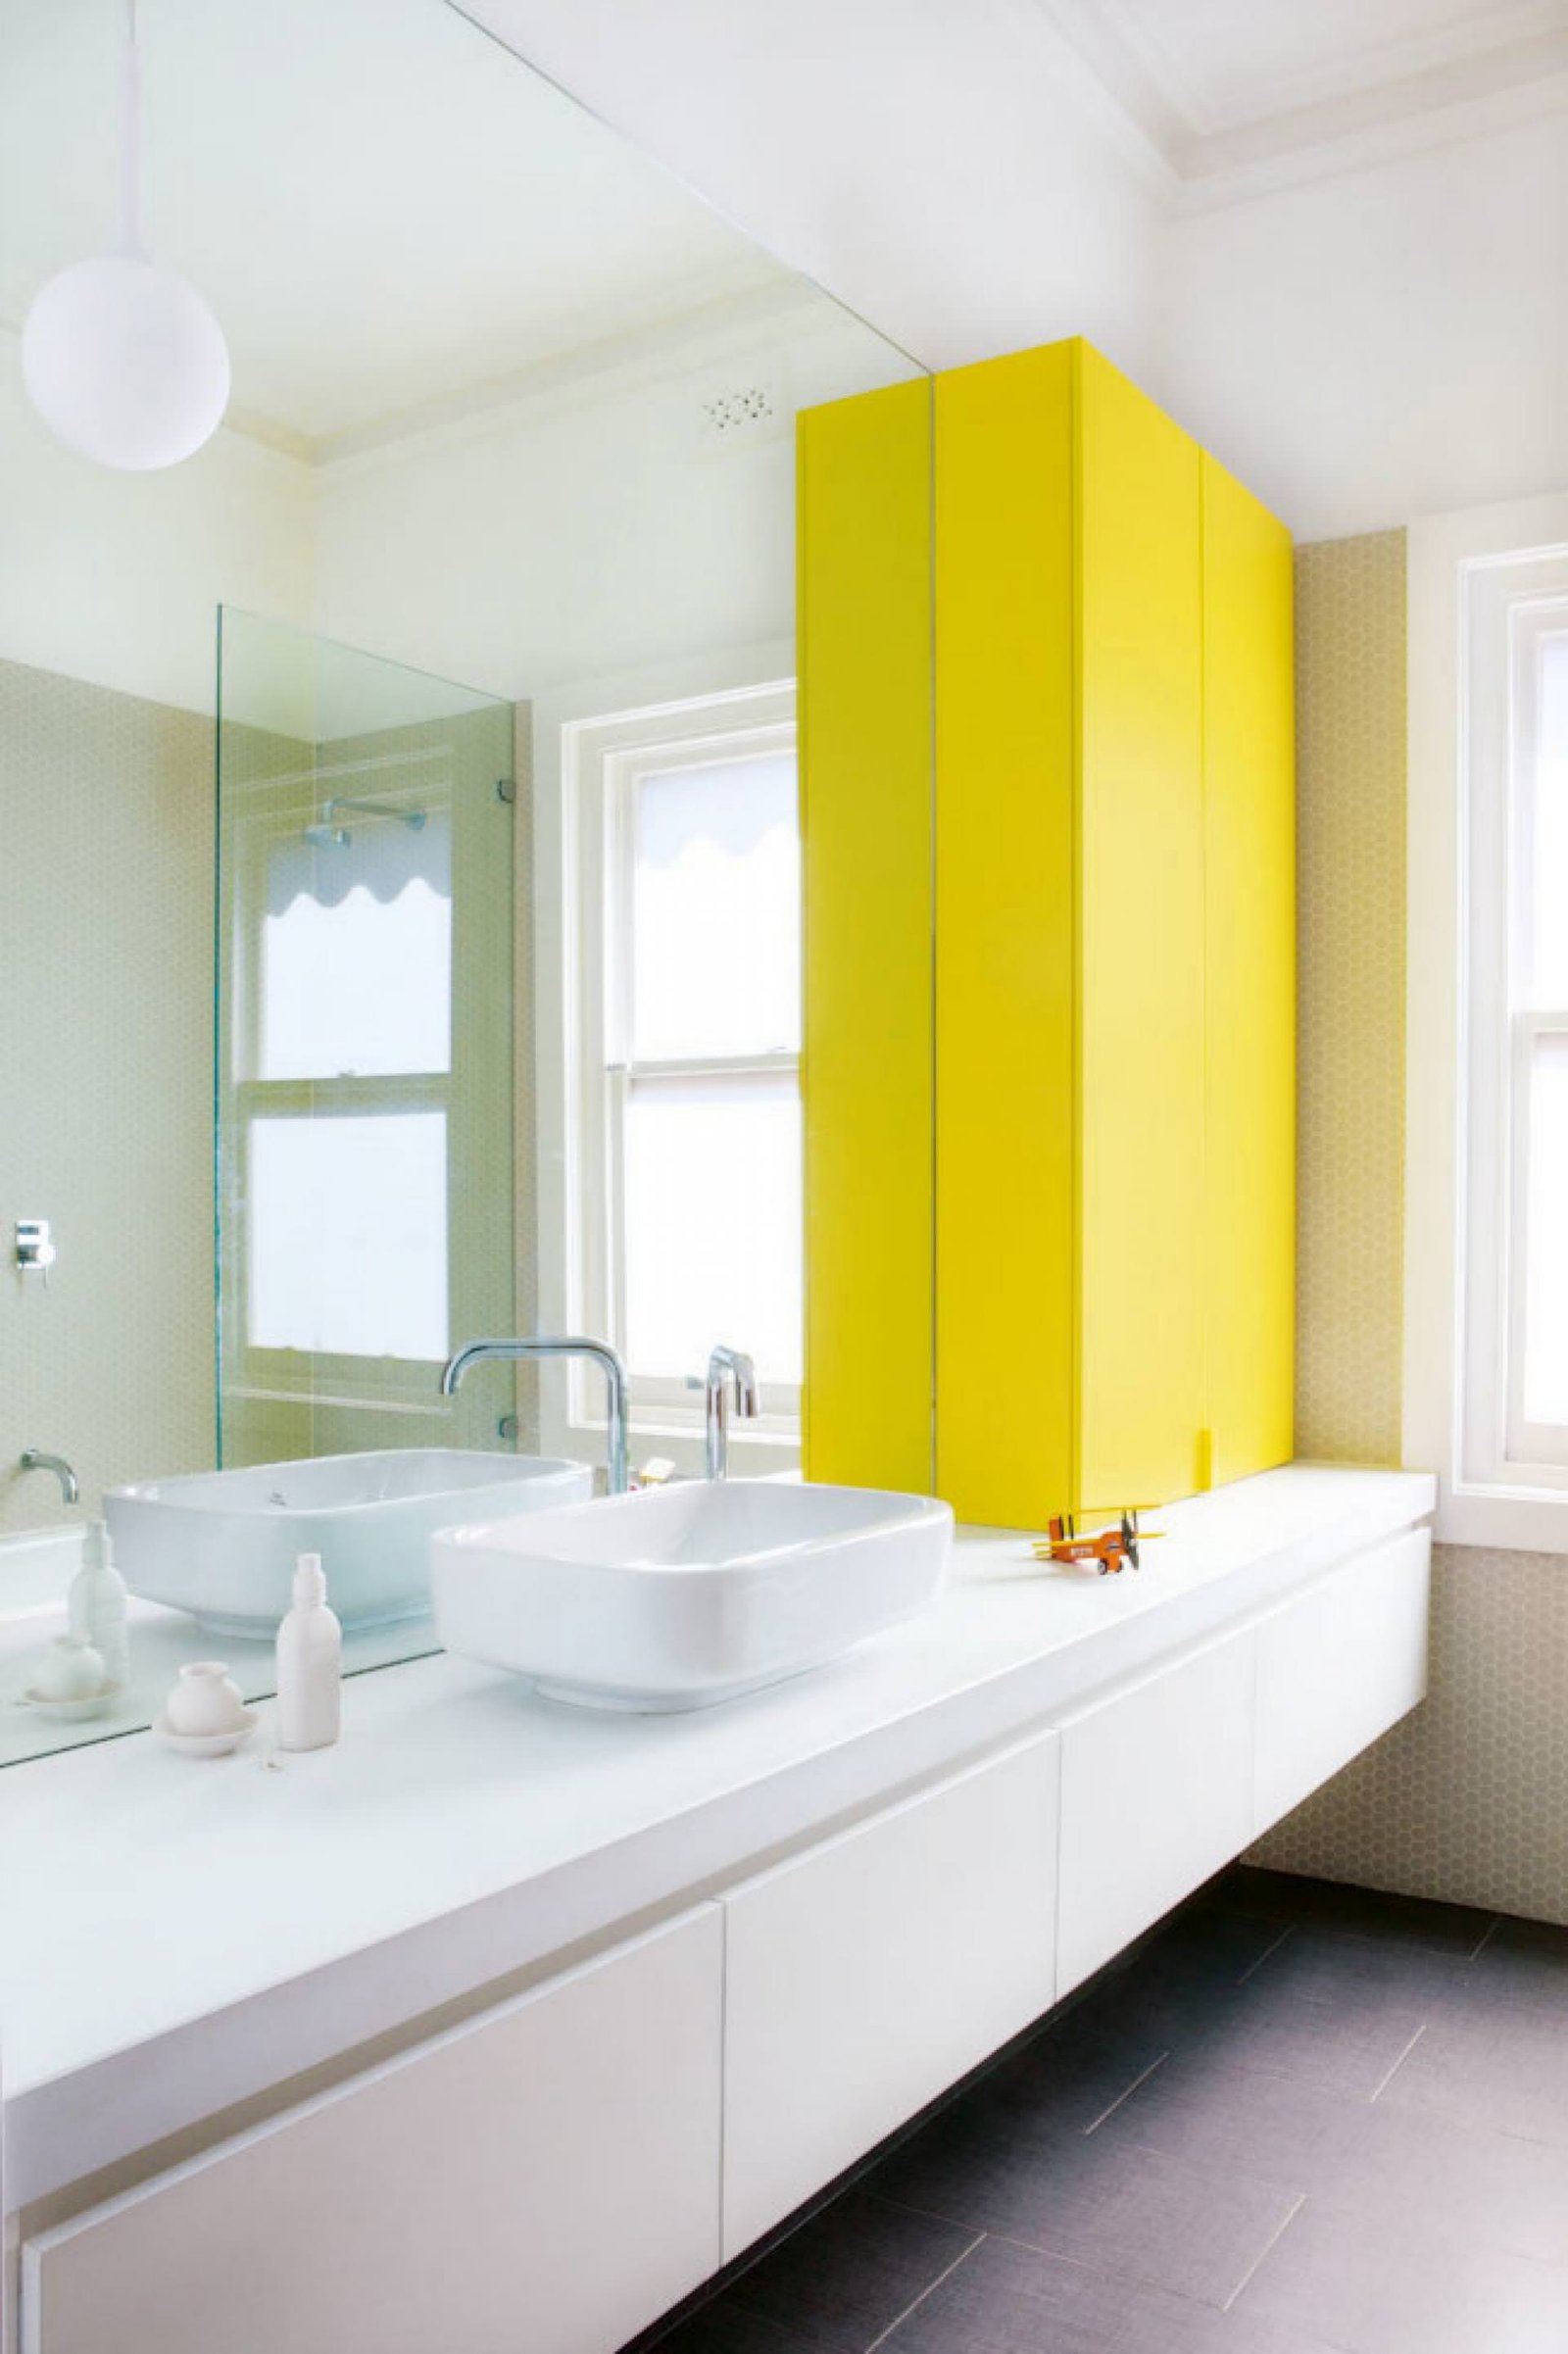 Le finiture bianche aiutano a tenere il bagno luminoso e pulito, ma l'armadio di colore giallo lo rende allegro e moderno